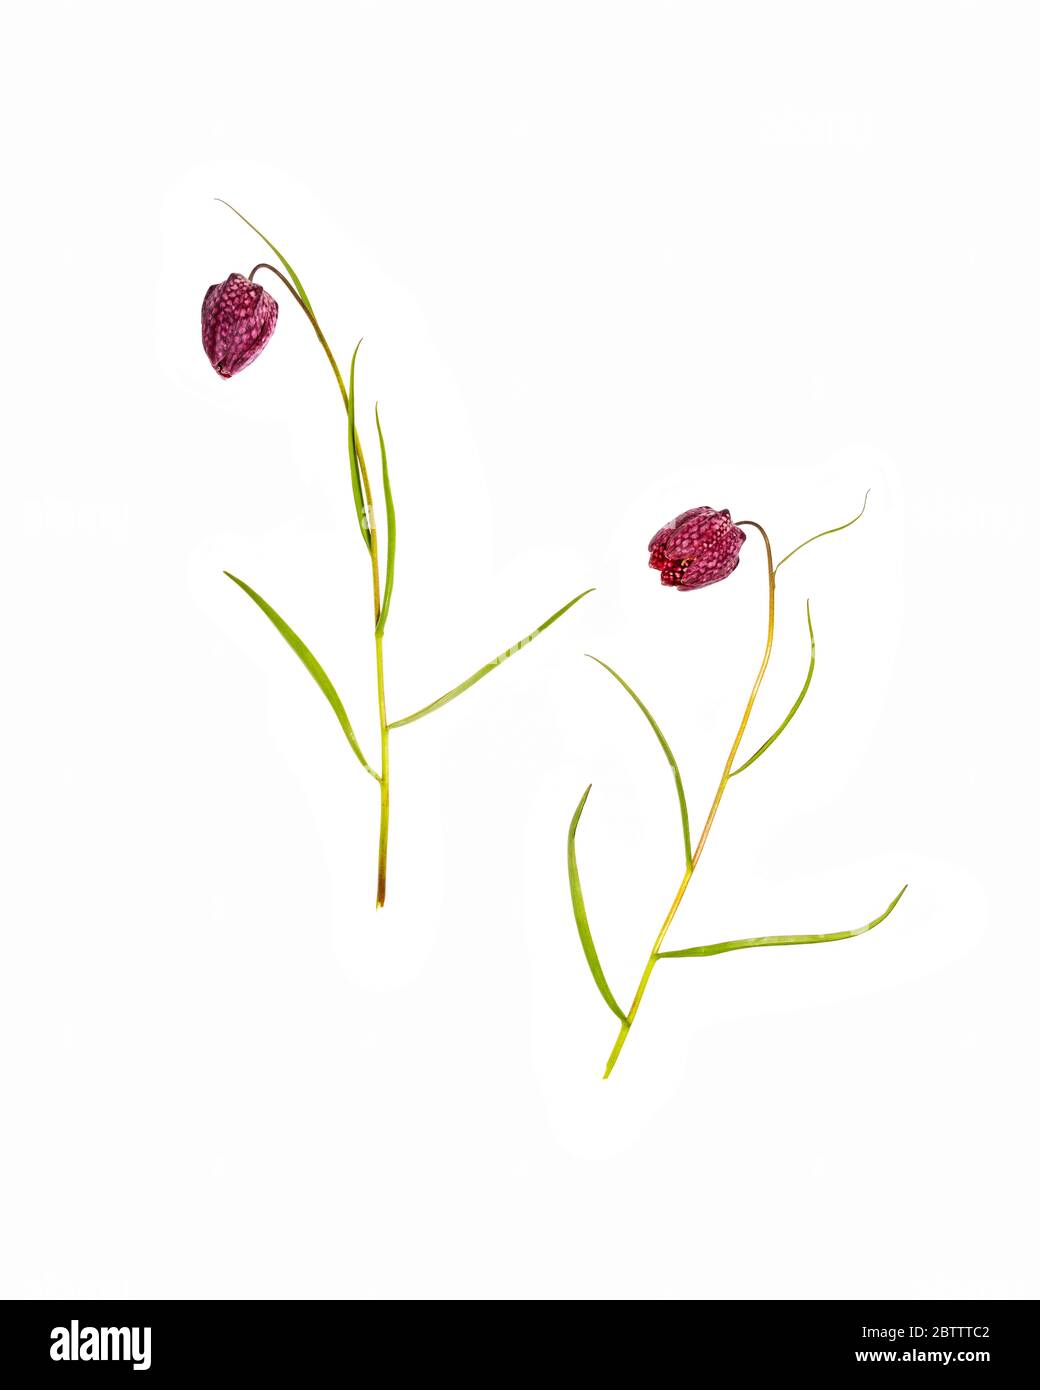 Testa di serpente o giglio scacchierato (Fritillaria meleagris) su sfondo bianco Foto Stock